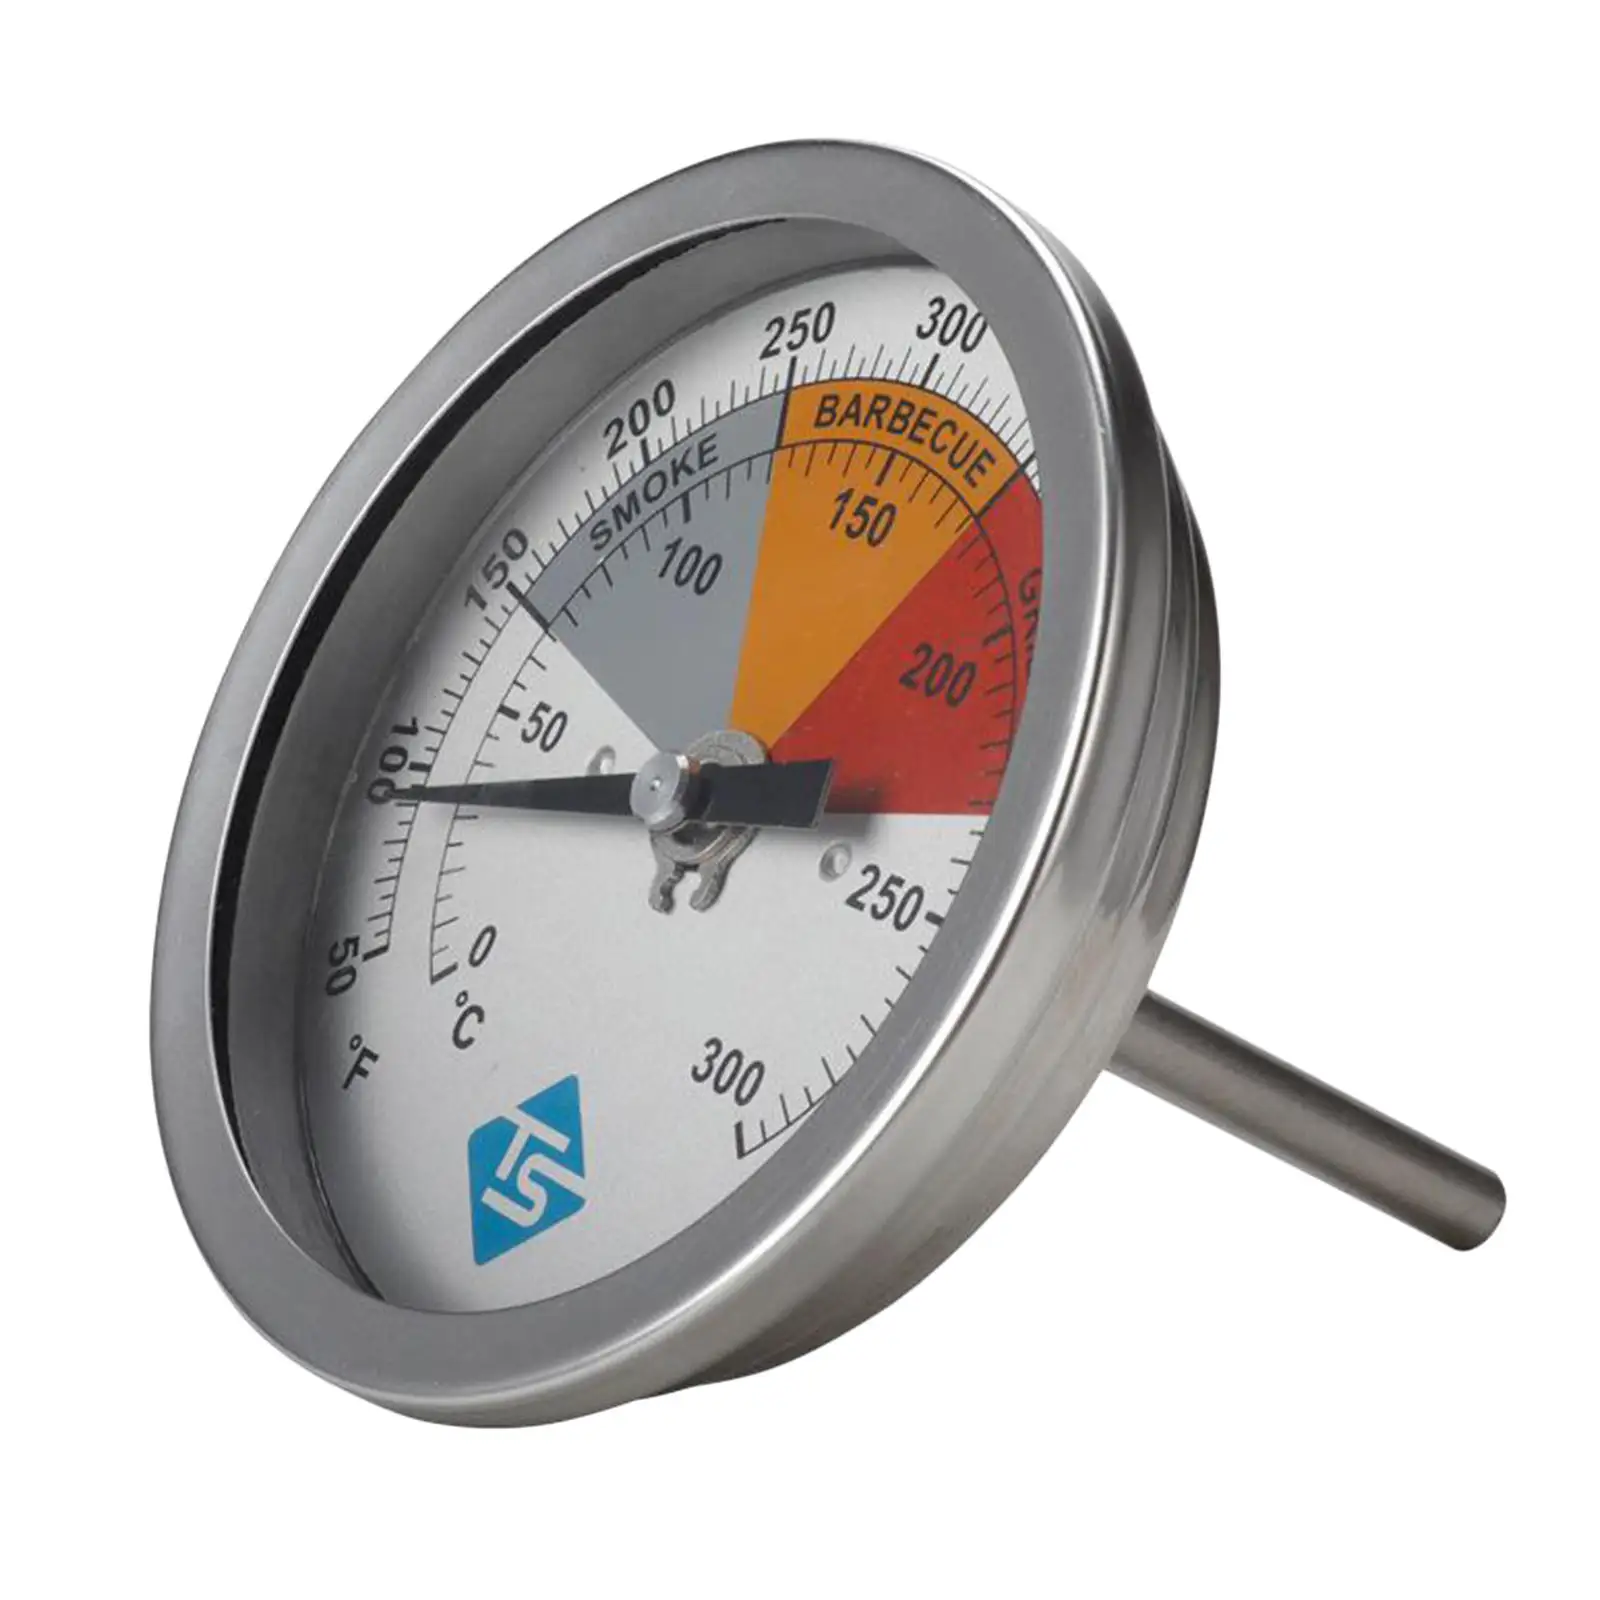 

Термометр из нержавеющей стали для барбекю и гриля, 3,27 дюйма, 0-300 градусов по Цельсию